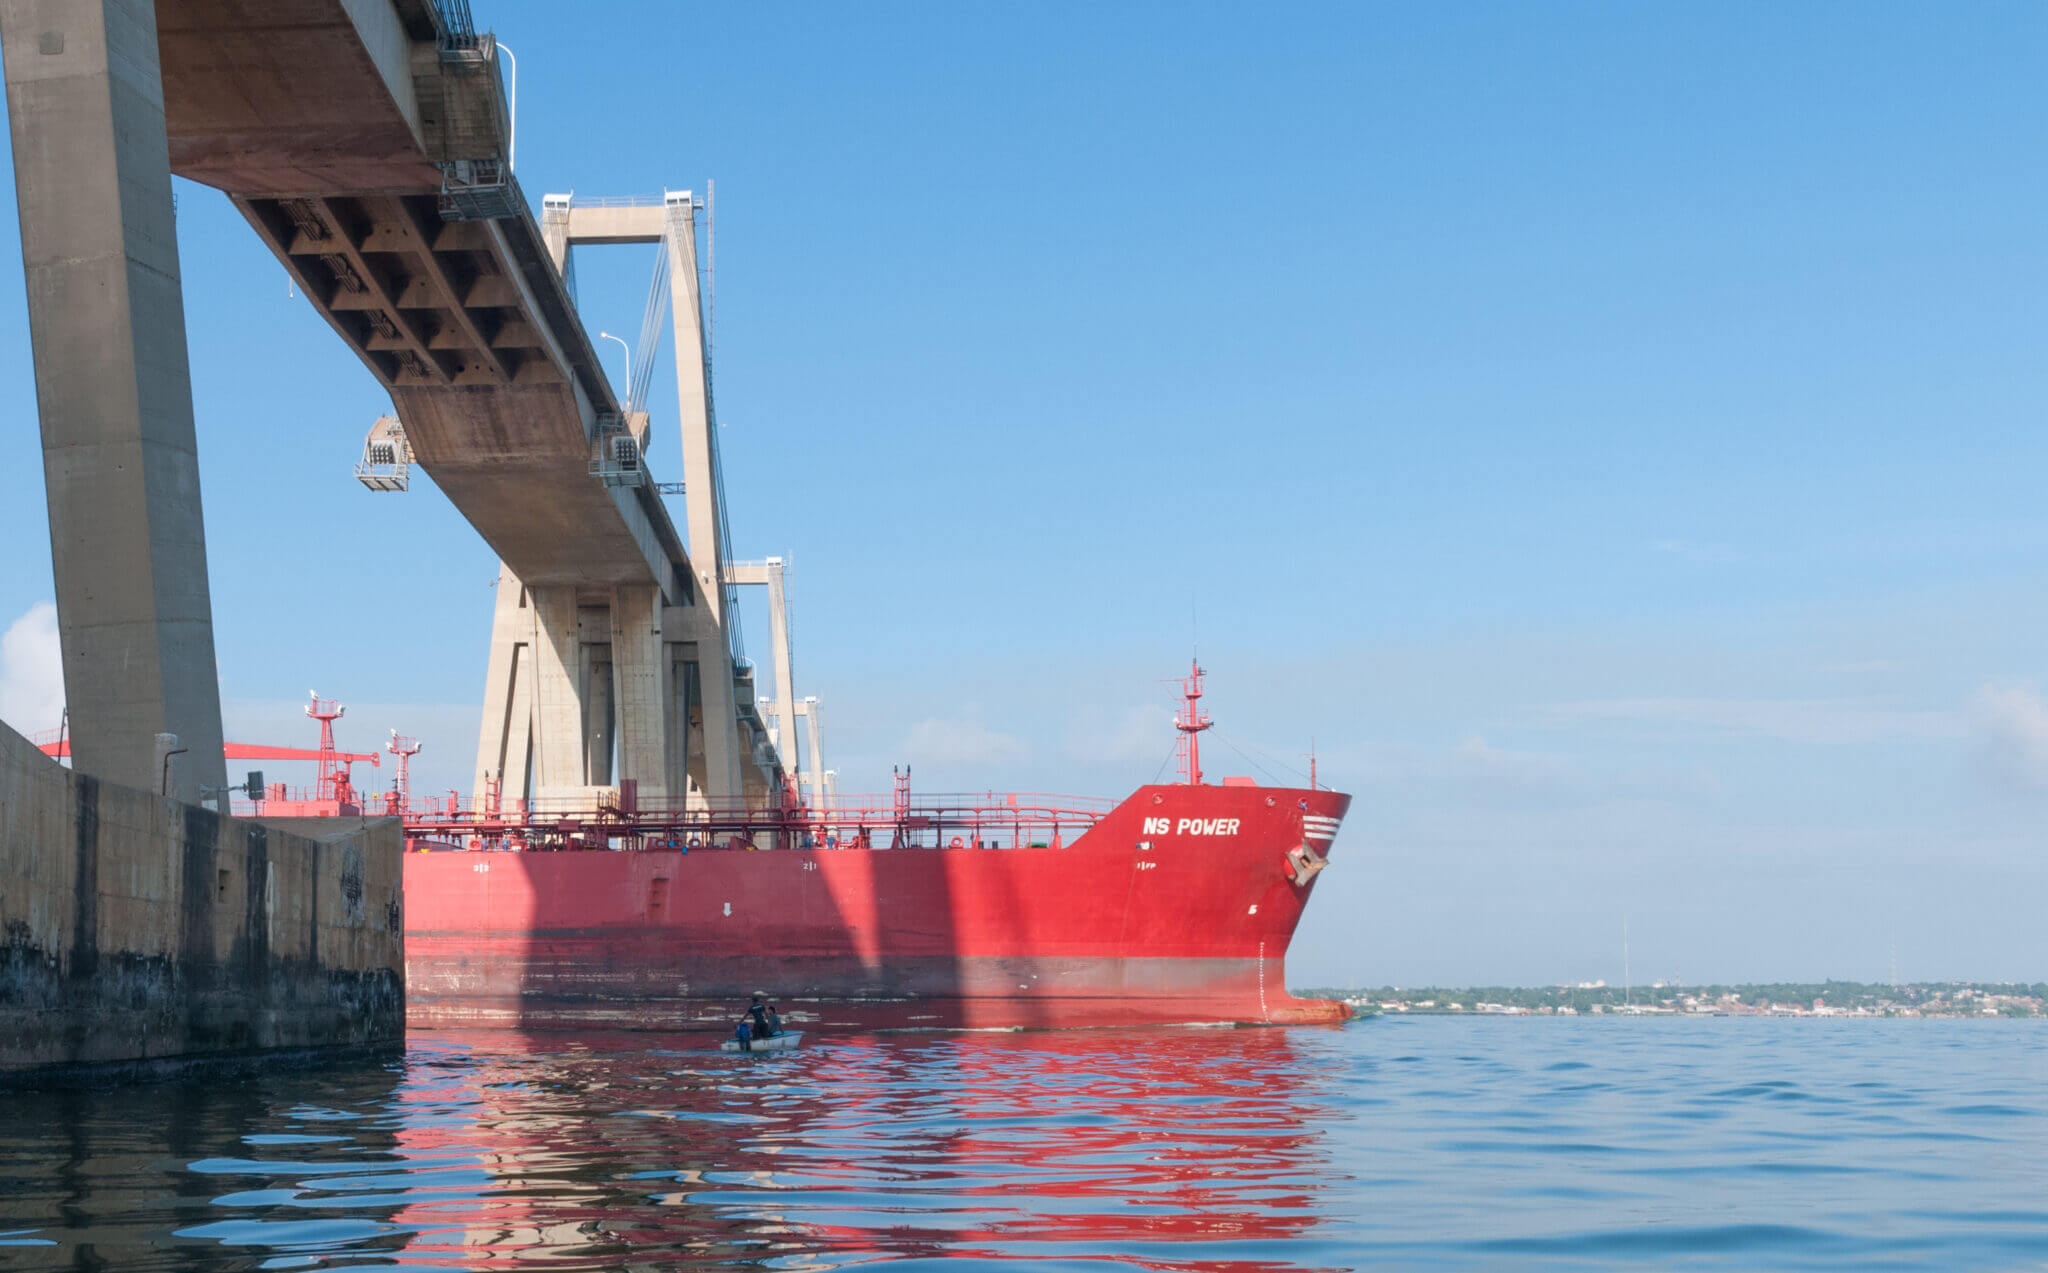 Venezolanischer roter Öltanker fährt unter einer Brücke hindurch